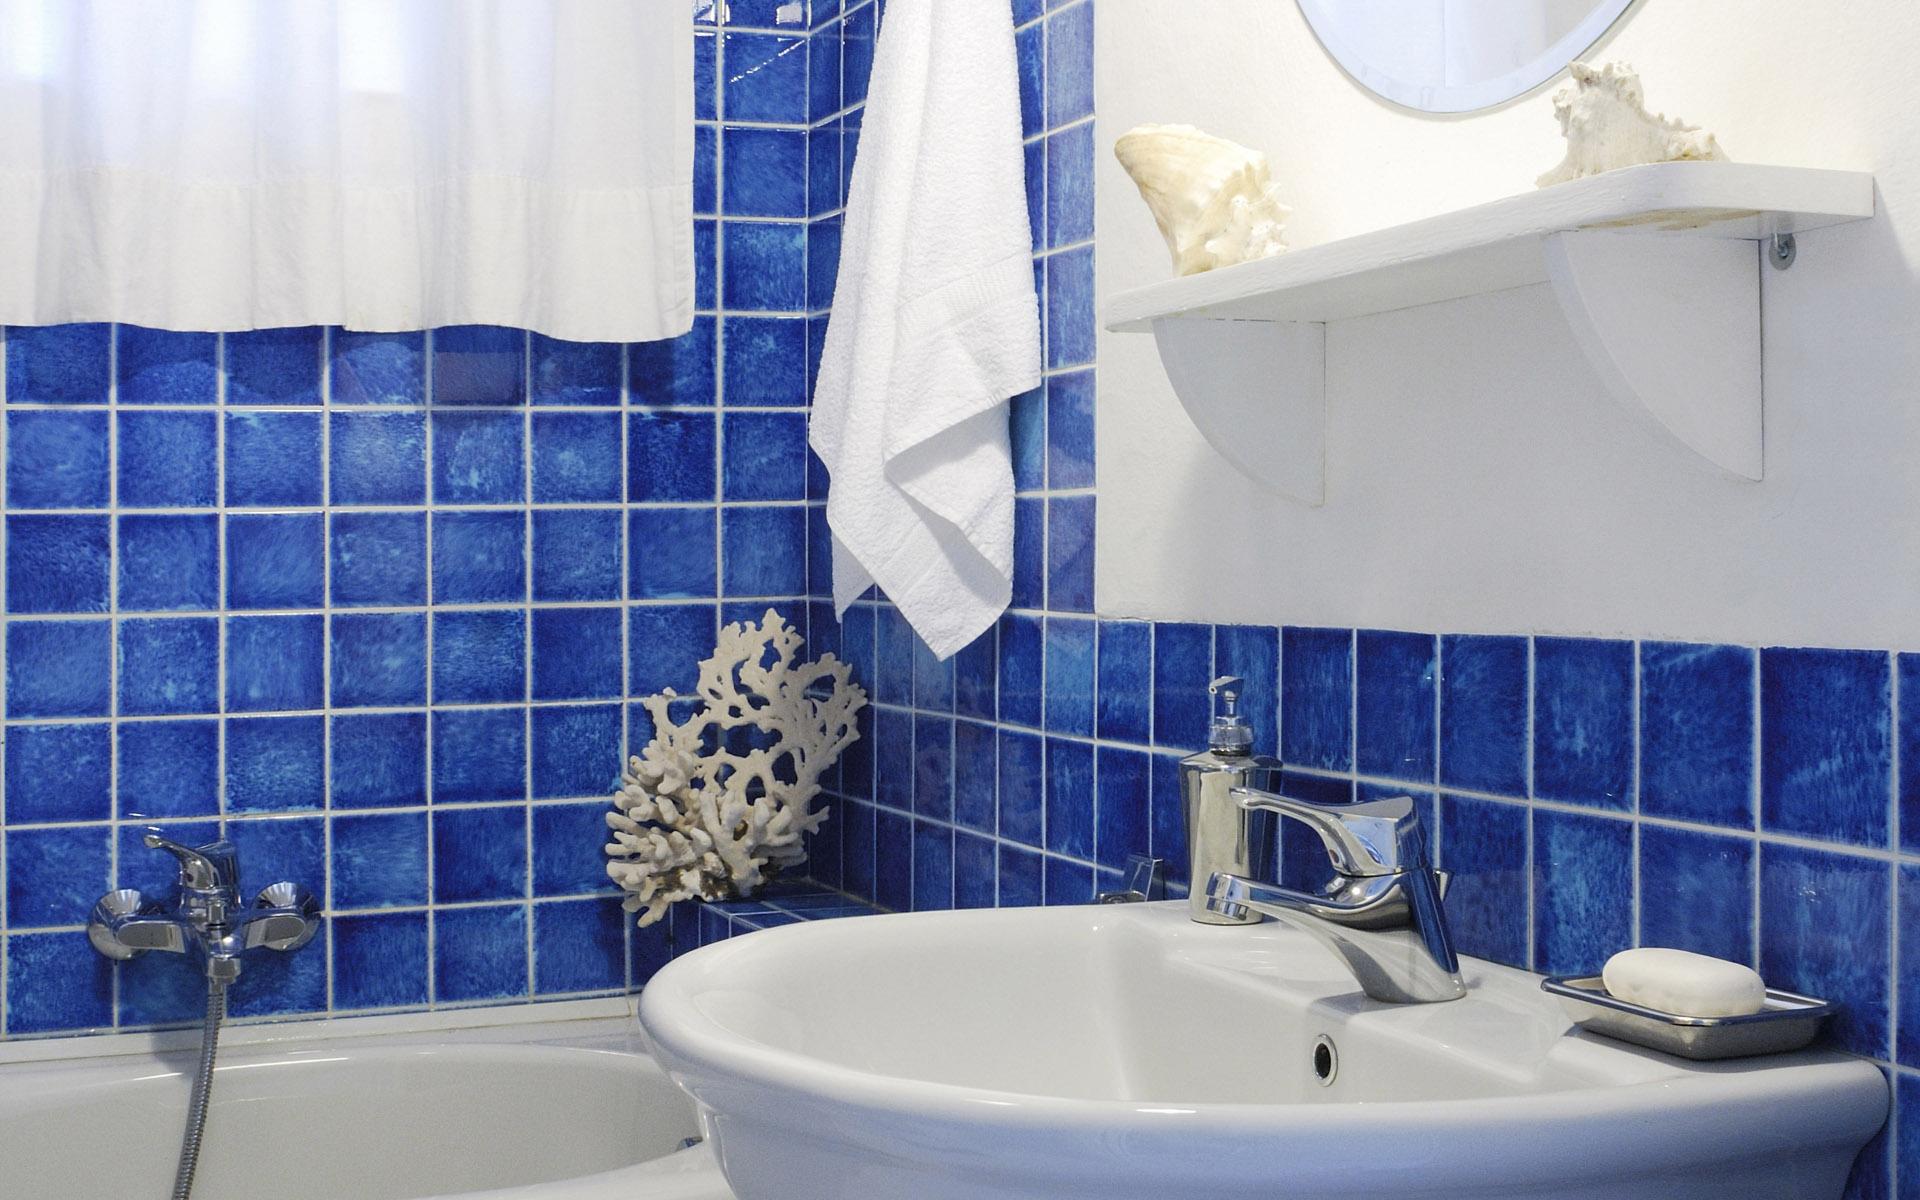 简约优雅的浴室设计效果图图片(4)